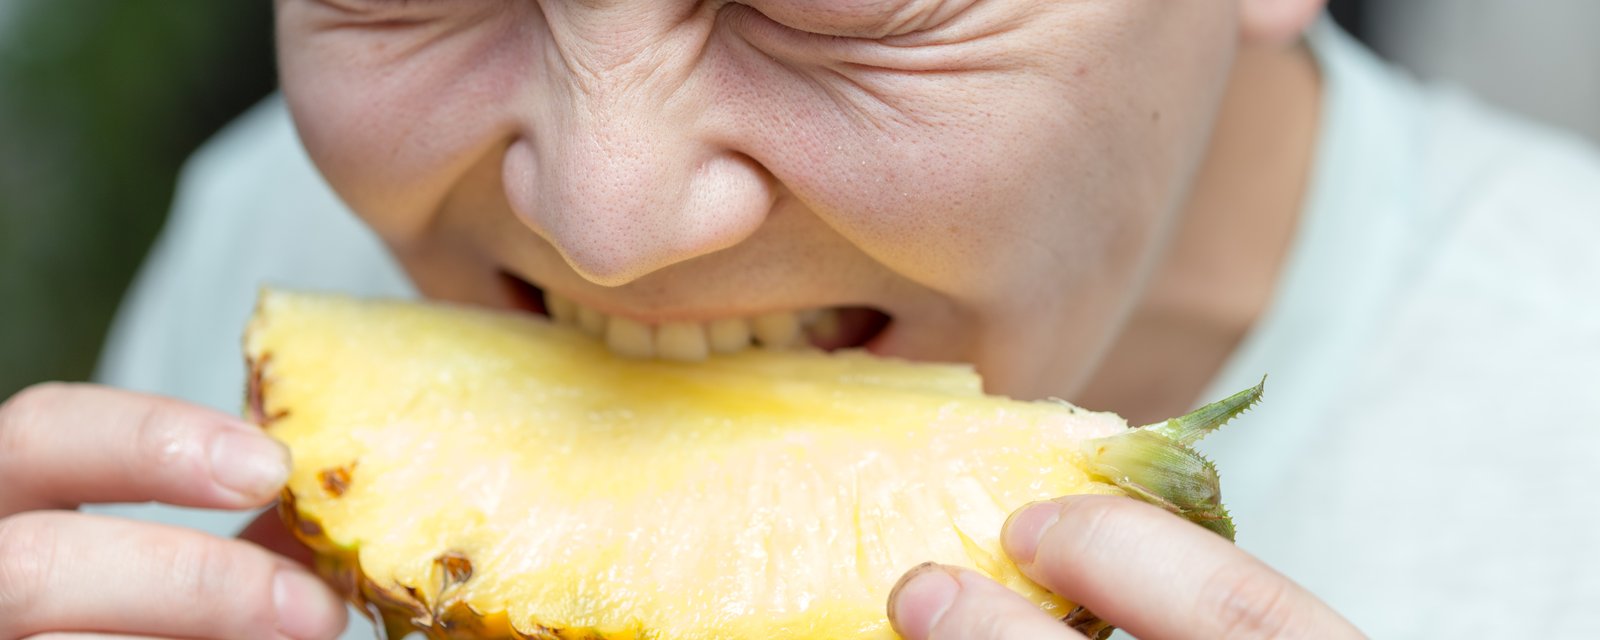 Voici la raison très déroutante pour laquelle votre langue picote lorsque vous mangez des ananas.